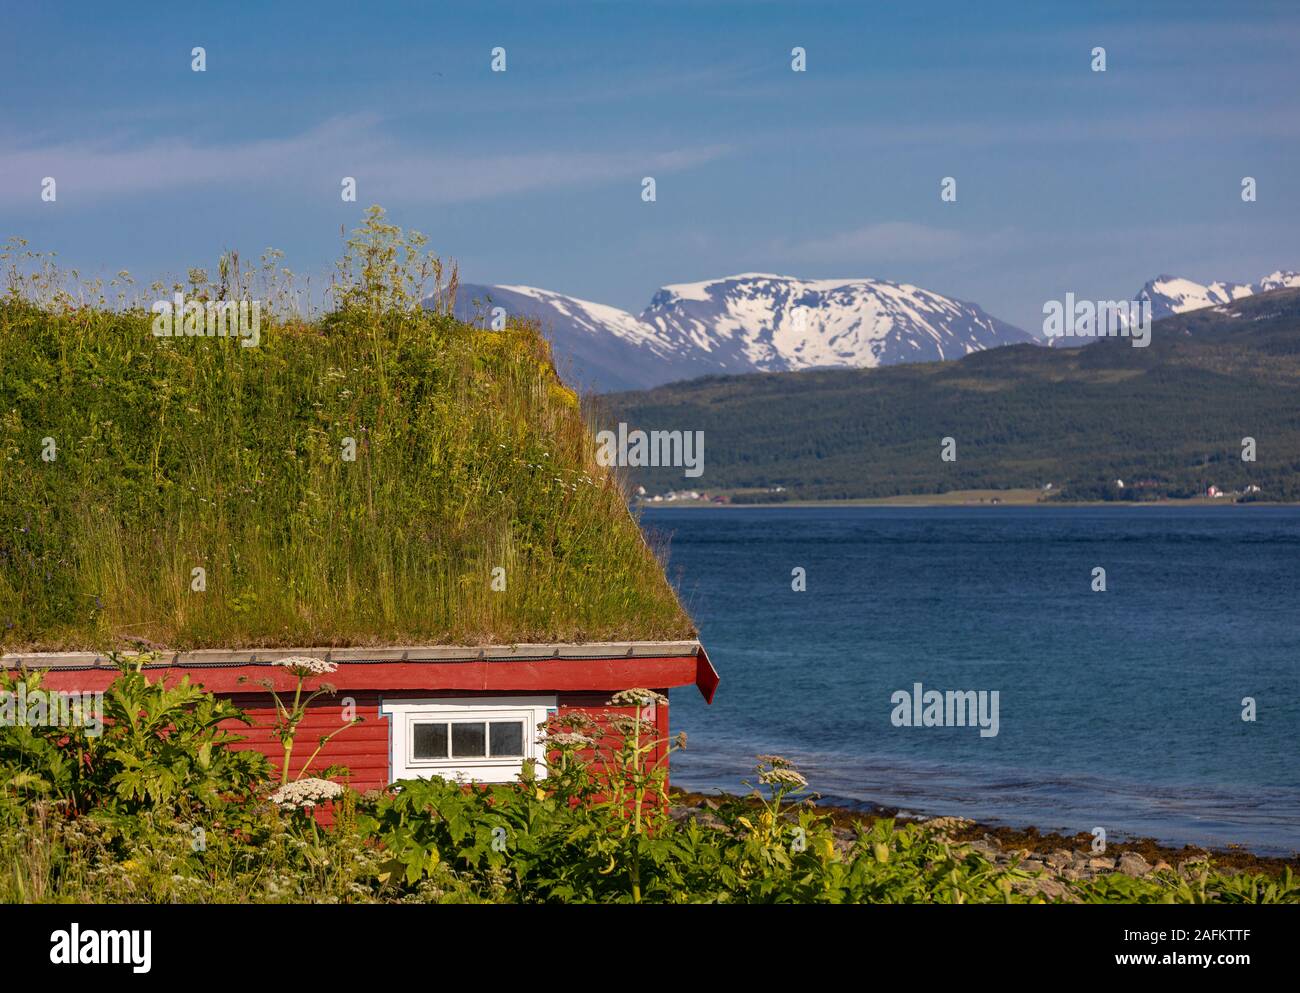 L'ÎLE DE KVALØYA, BAKKEJORD, NORVÈGE - toit de gazon sur l'île de Kvaløya en premier plan, et vue de l'Straumsfjorden fjord et montagnes. Banque D'Images